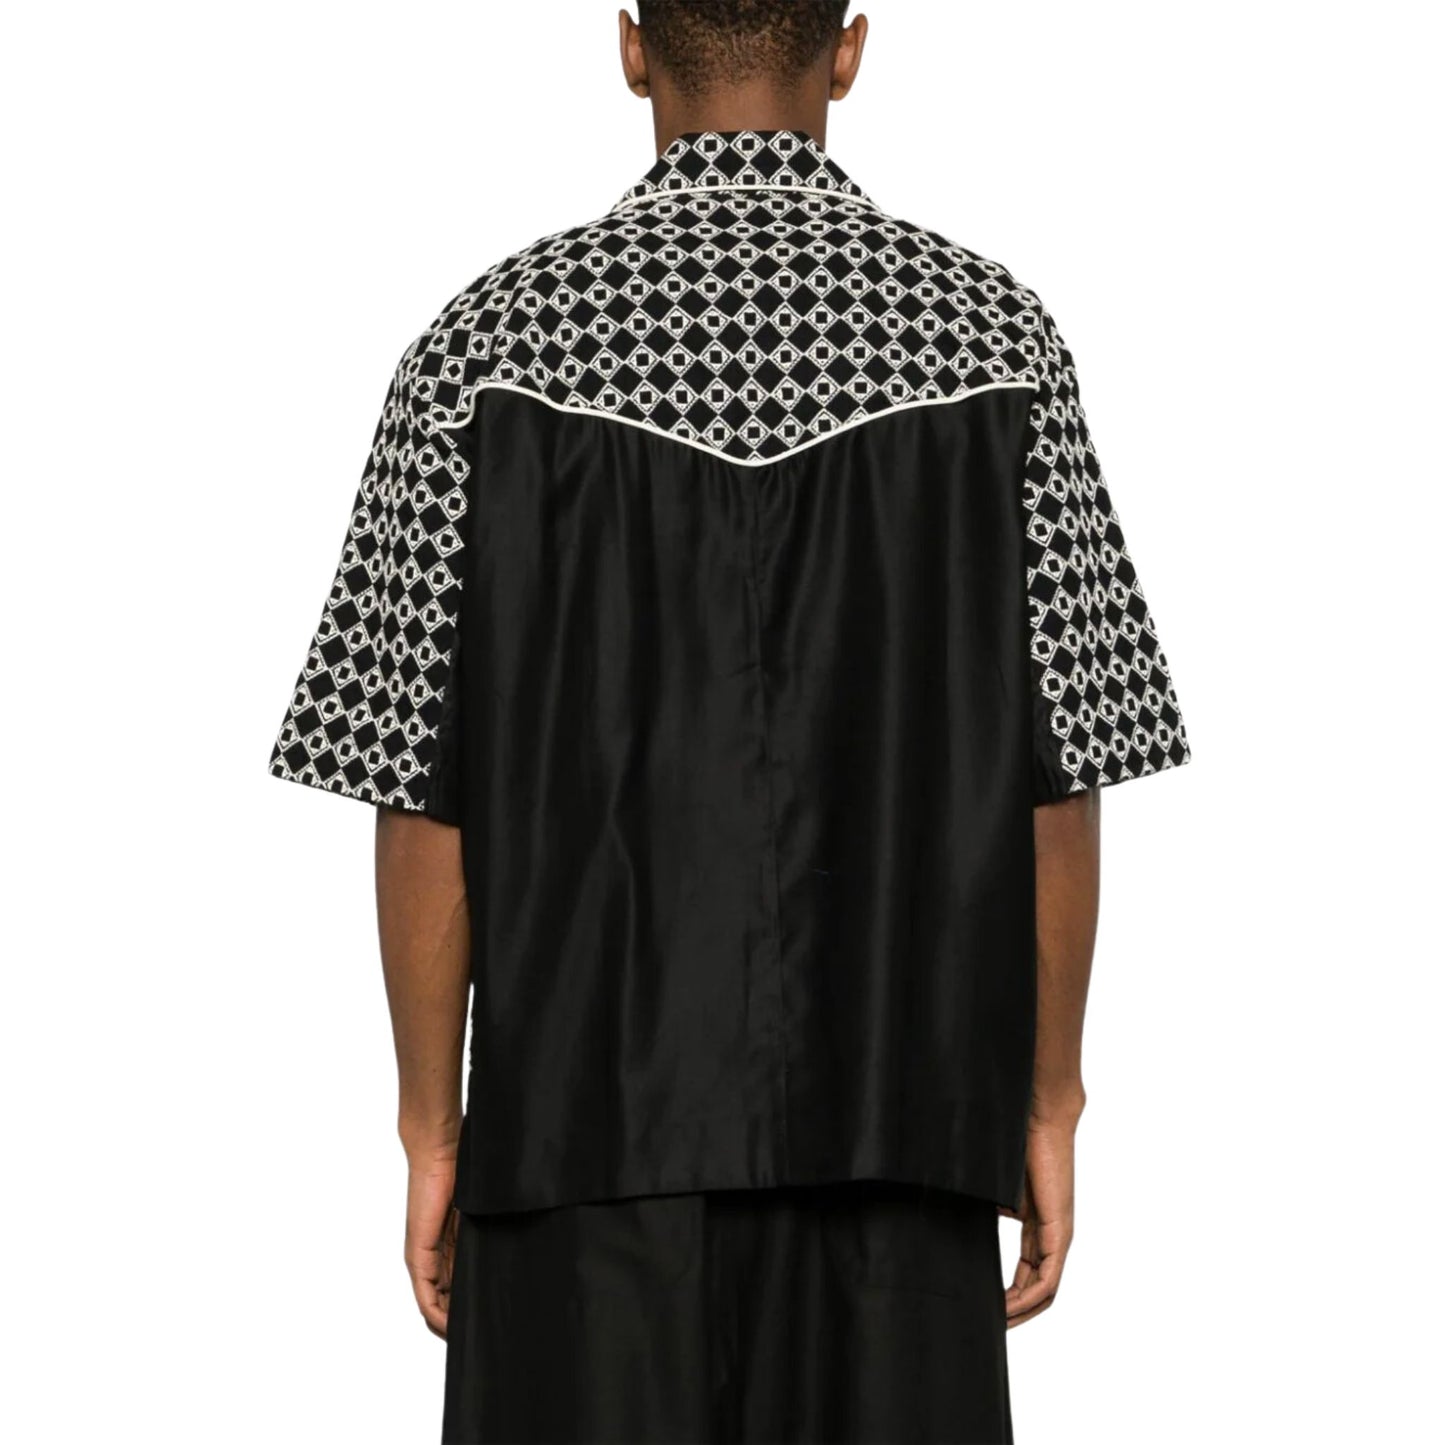 NICHOLAS DALEY - Mento Geometrical Shirt